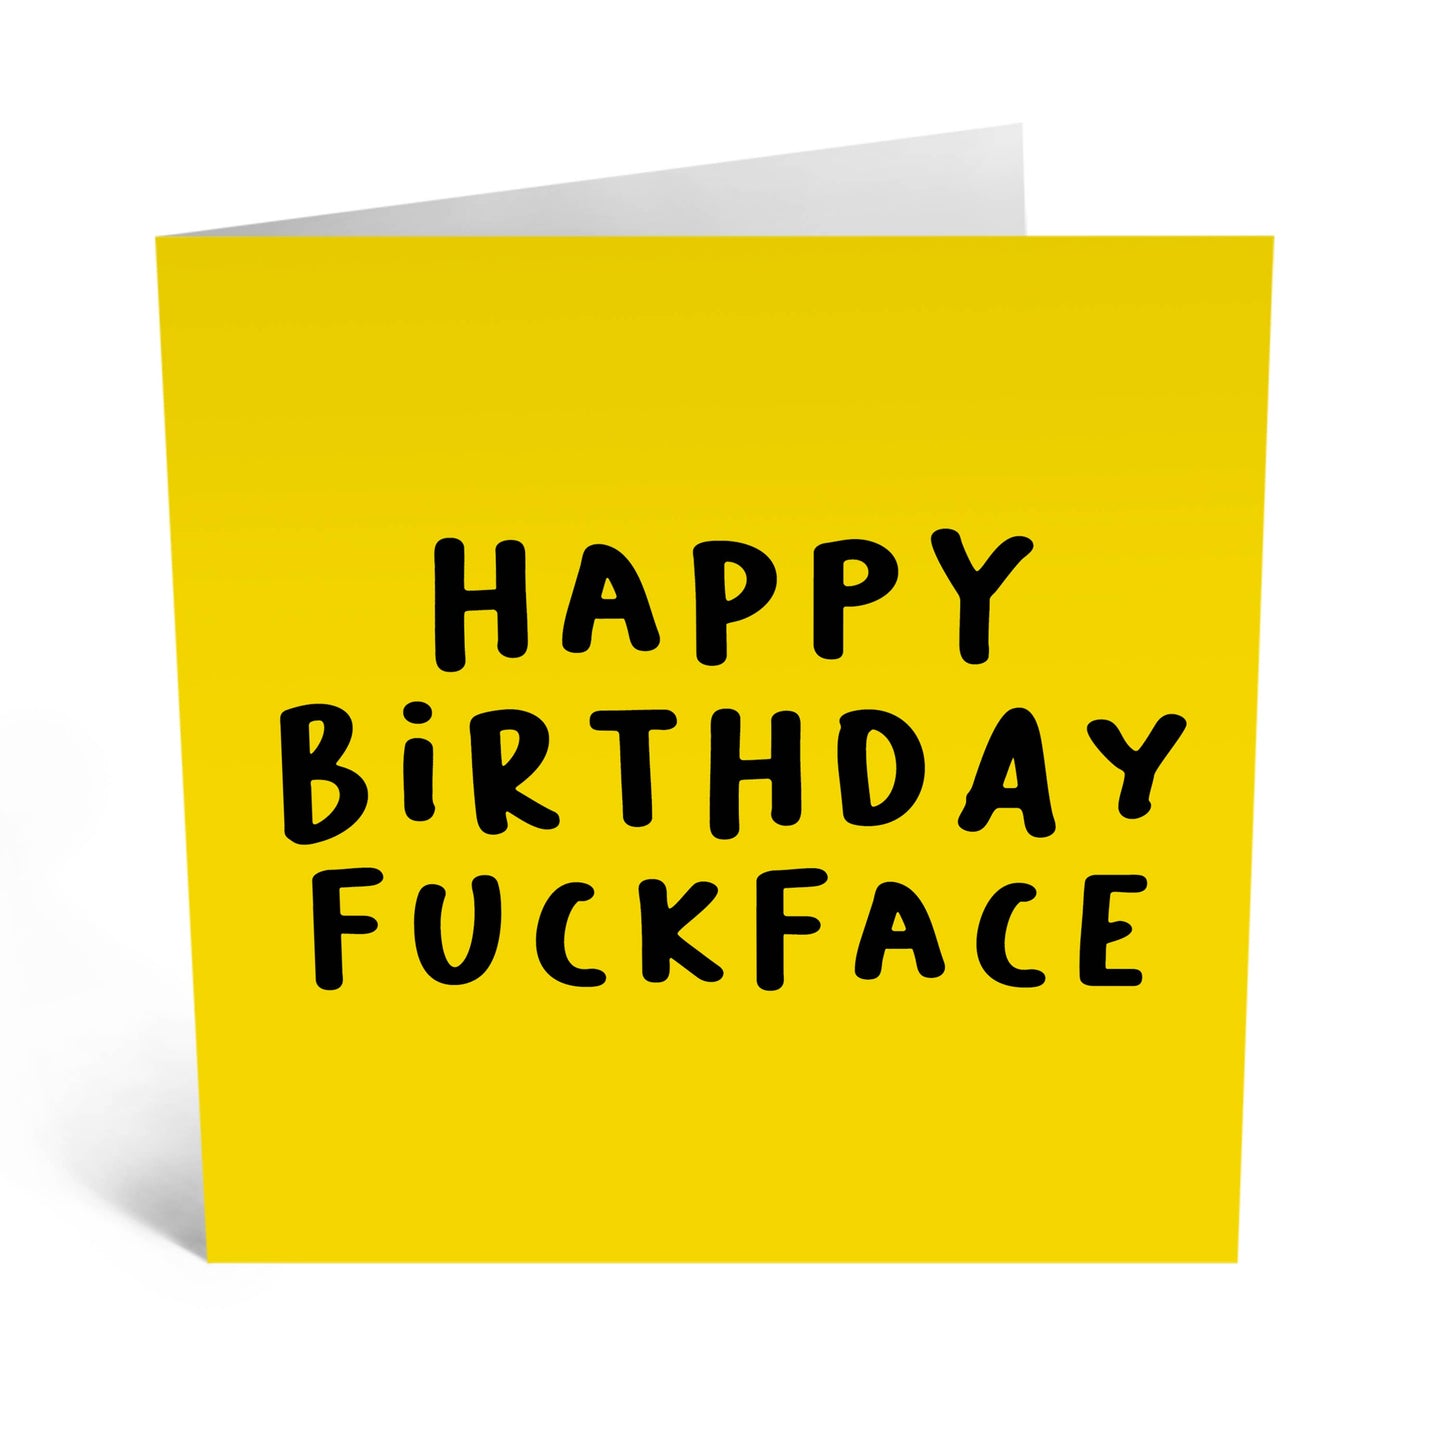 Happy Birthday Fuckface Card